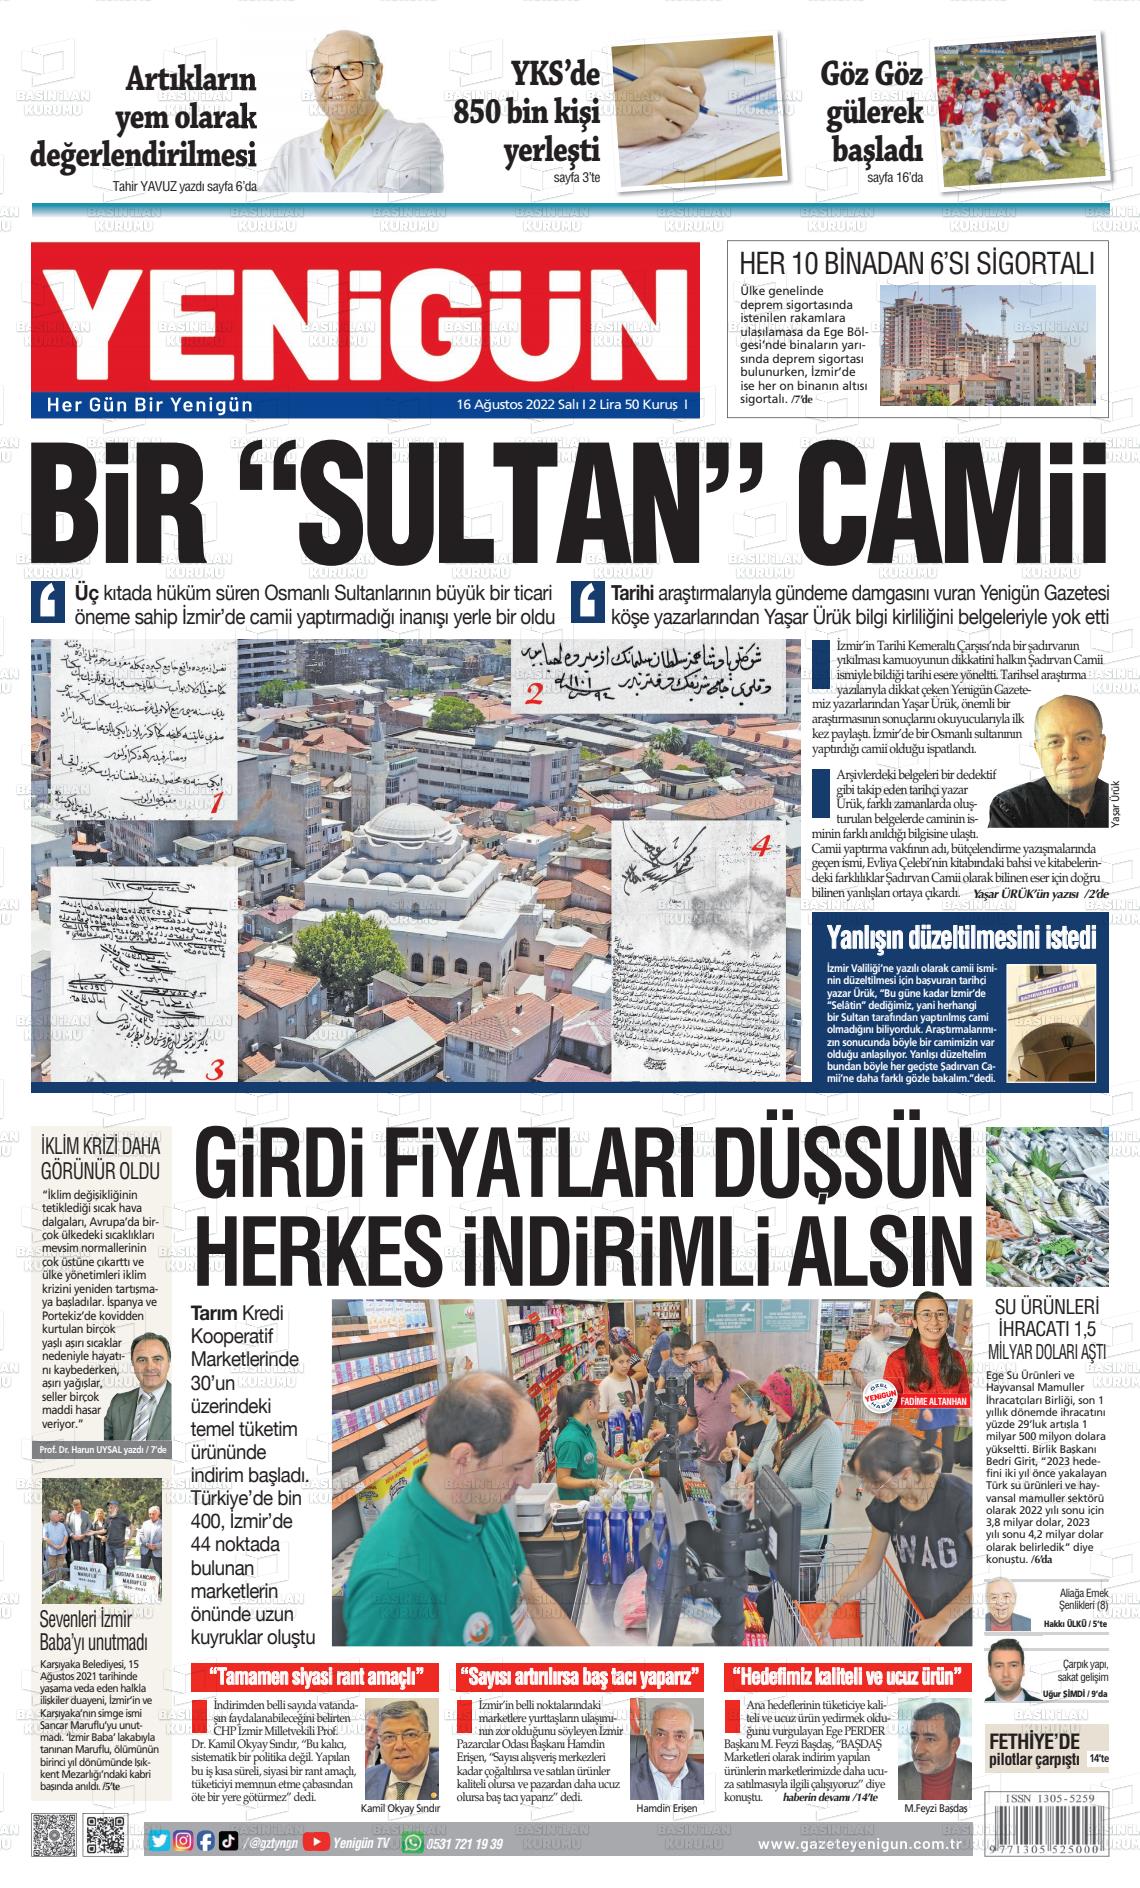 16 Ağustos 2022 Yeni Gün Gazete Manşeti